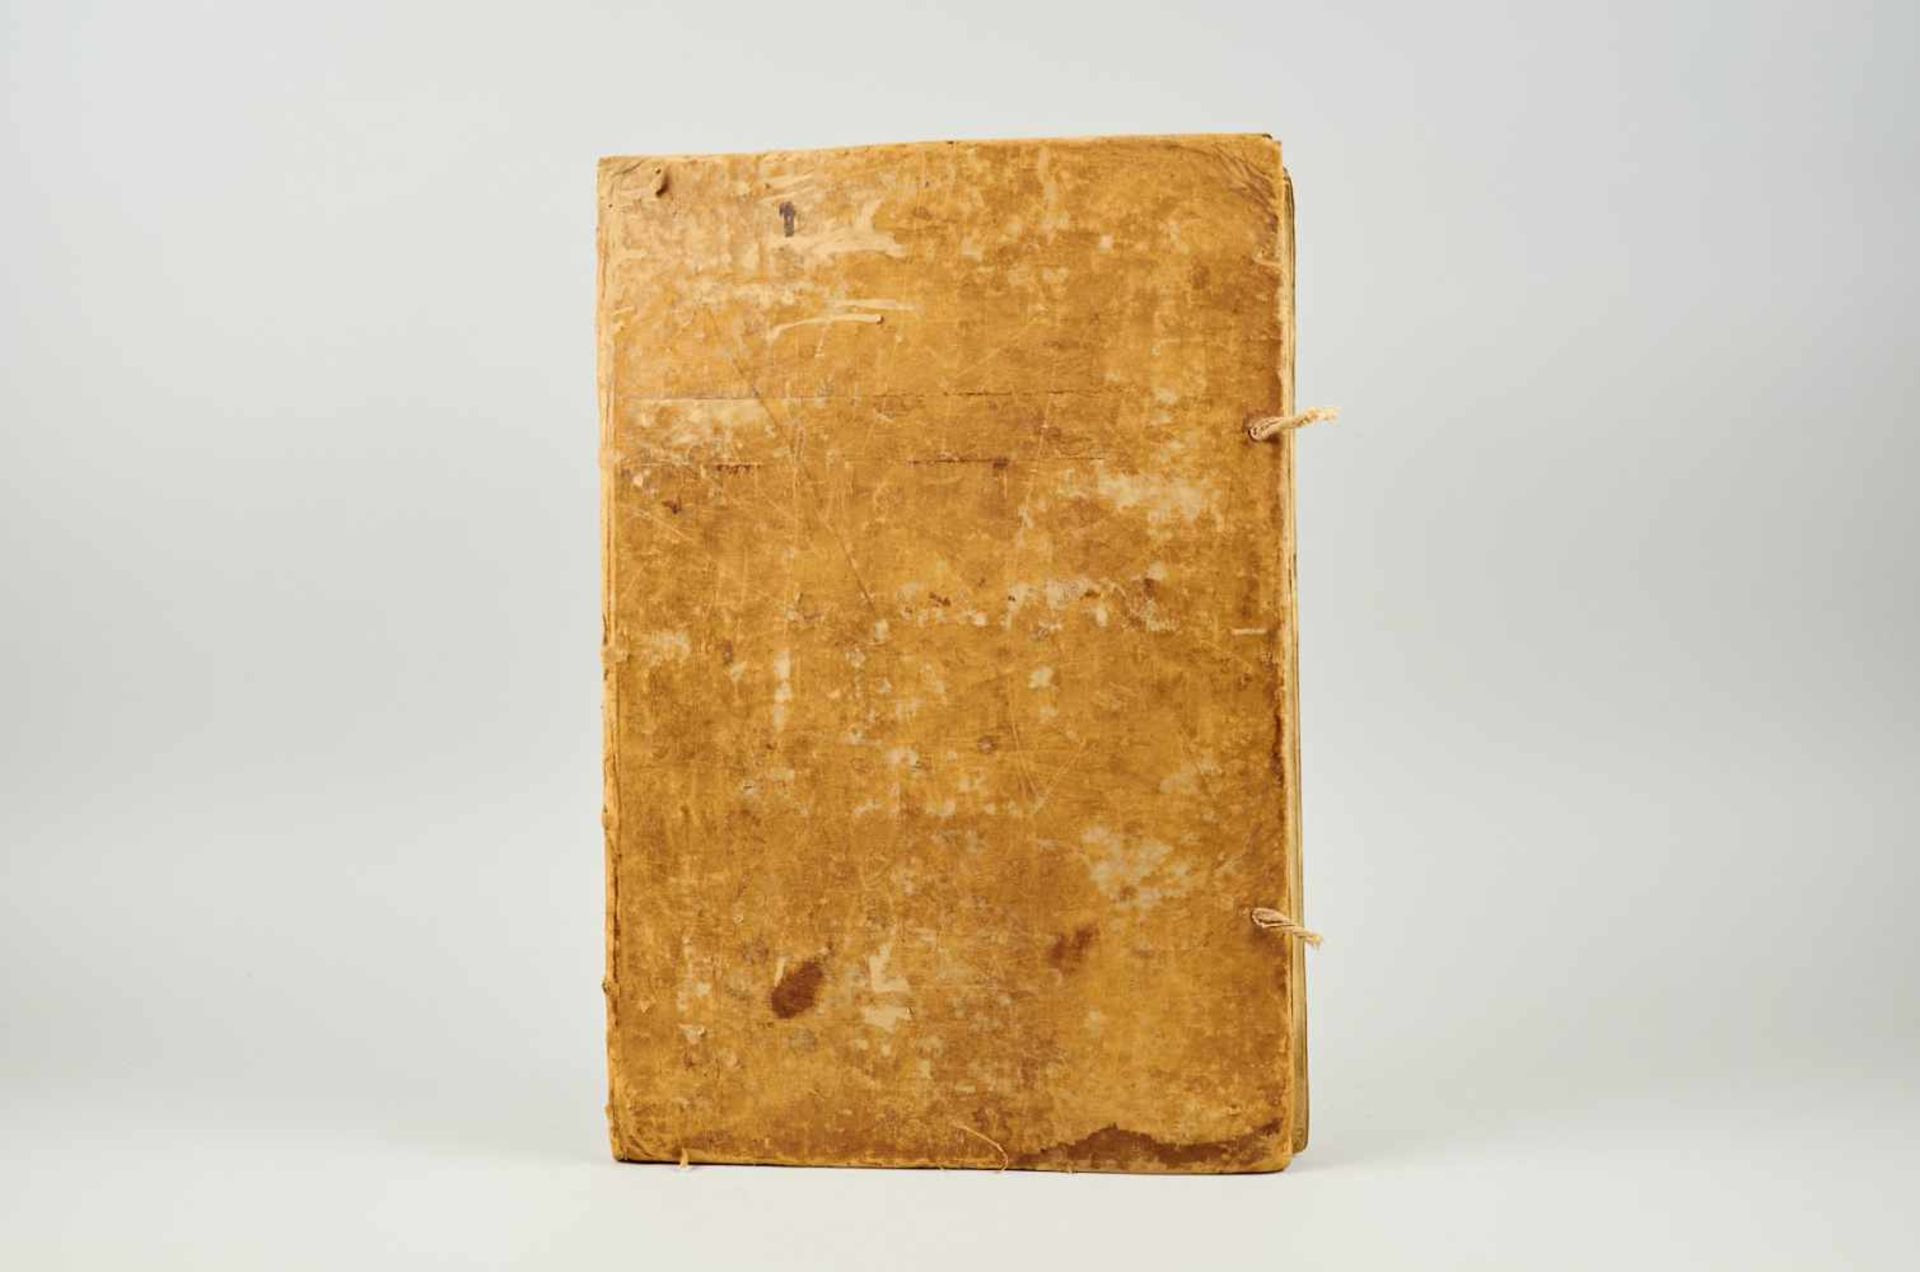 Antiphonar - Lateinische Handschrift auf Pergament.Spanien, dat. 1682. Ca. 45 x 30 cm. Fragment. Mit